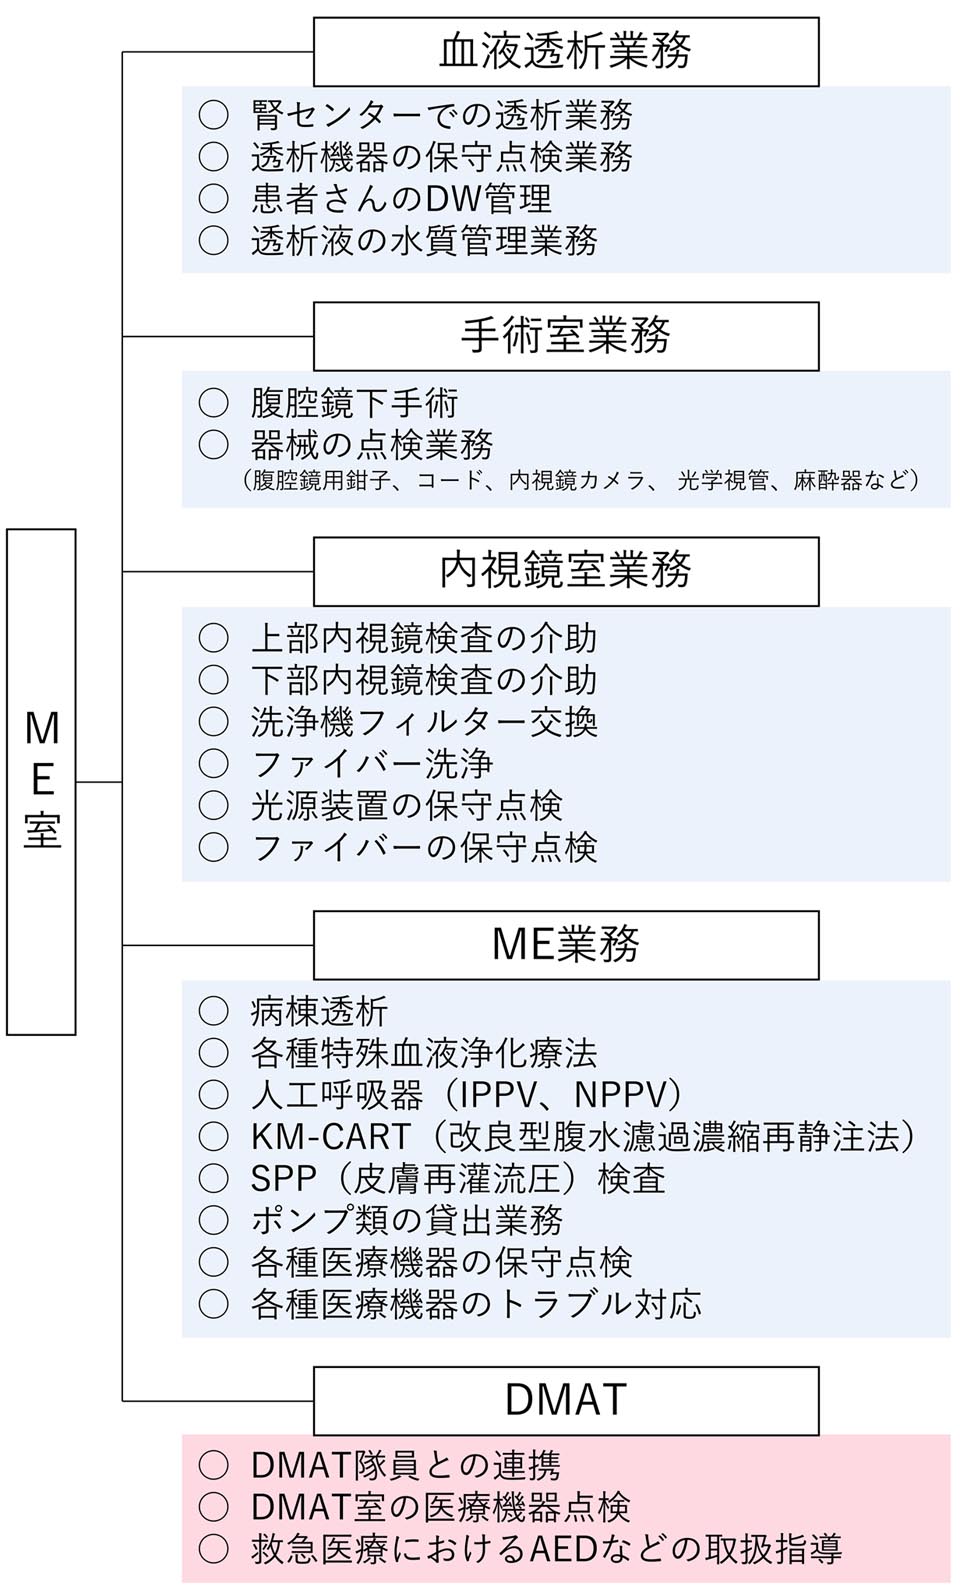 organizational_chart1